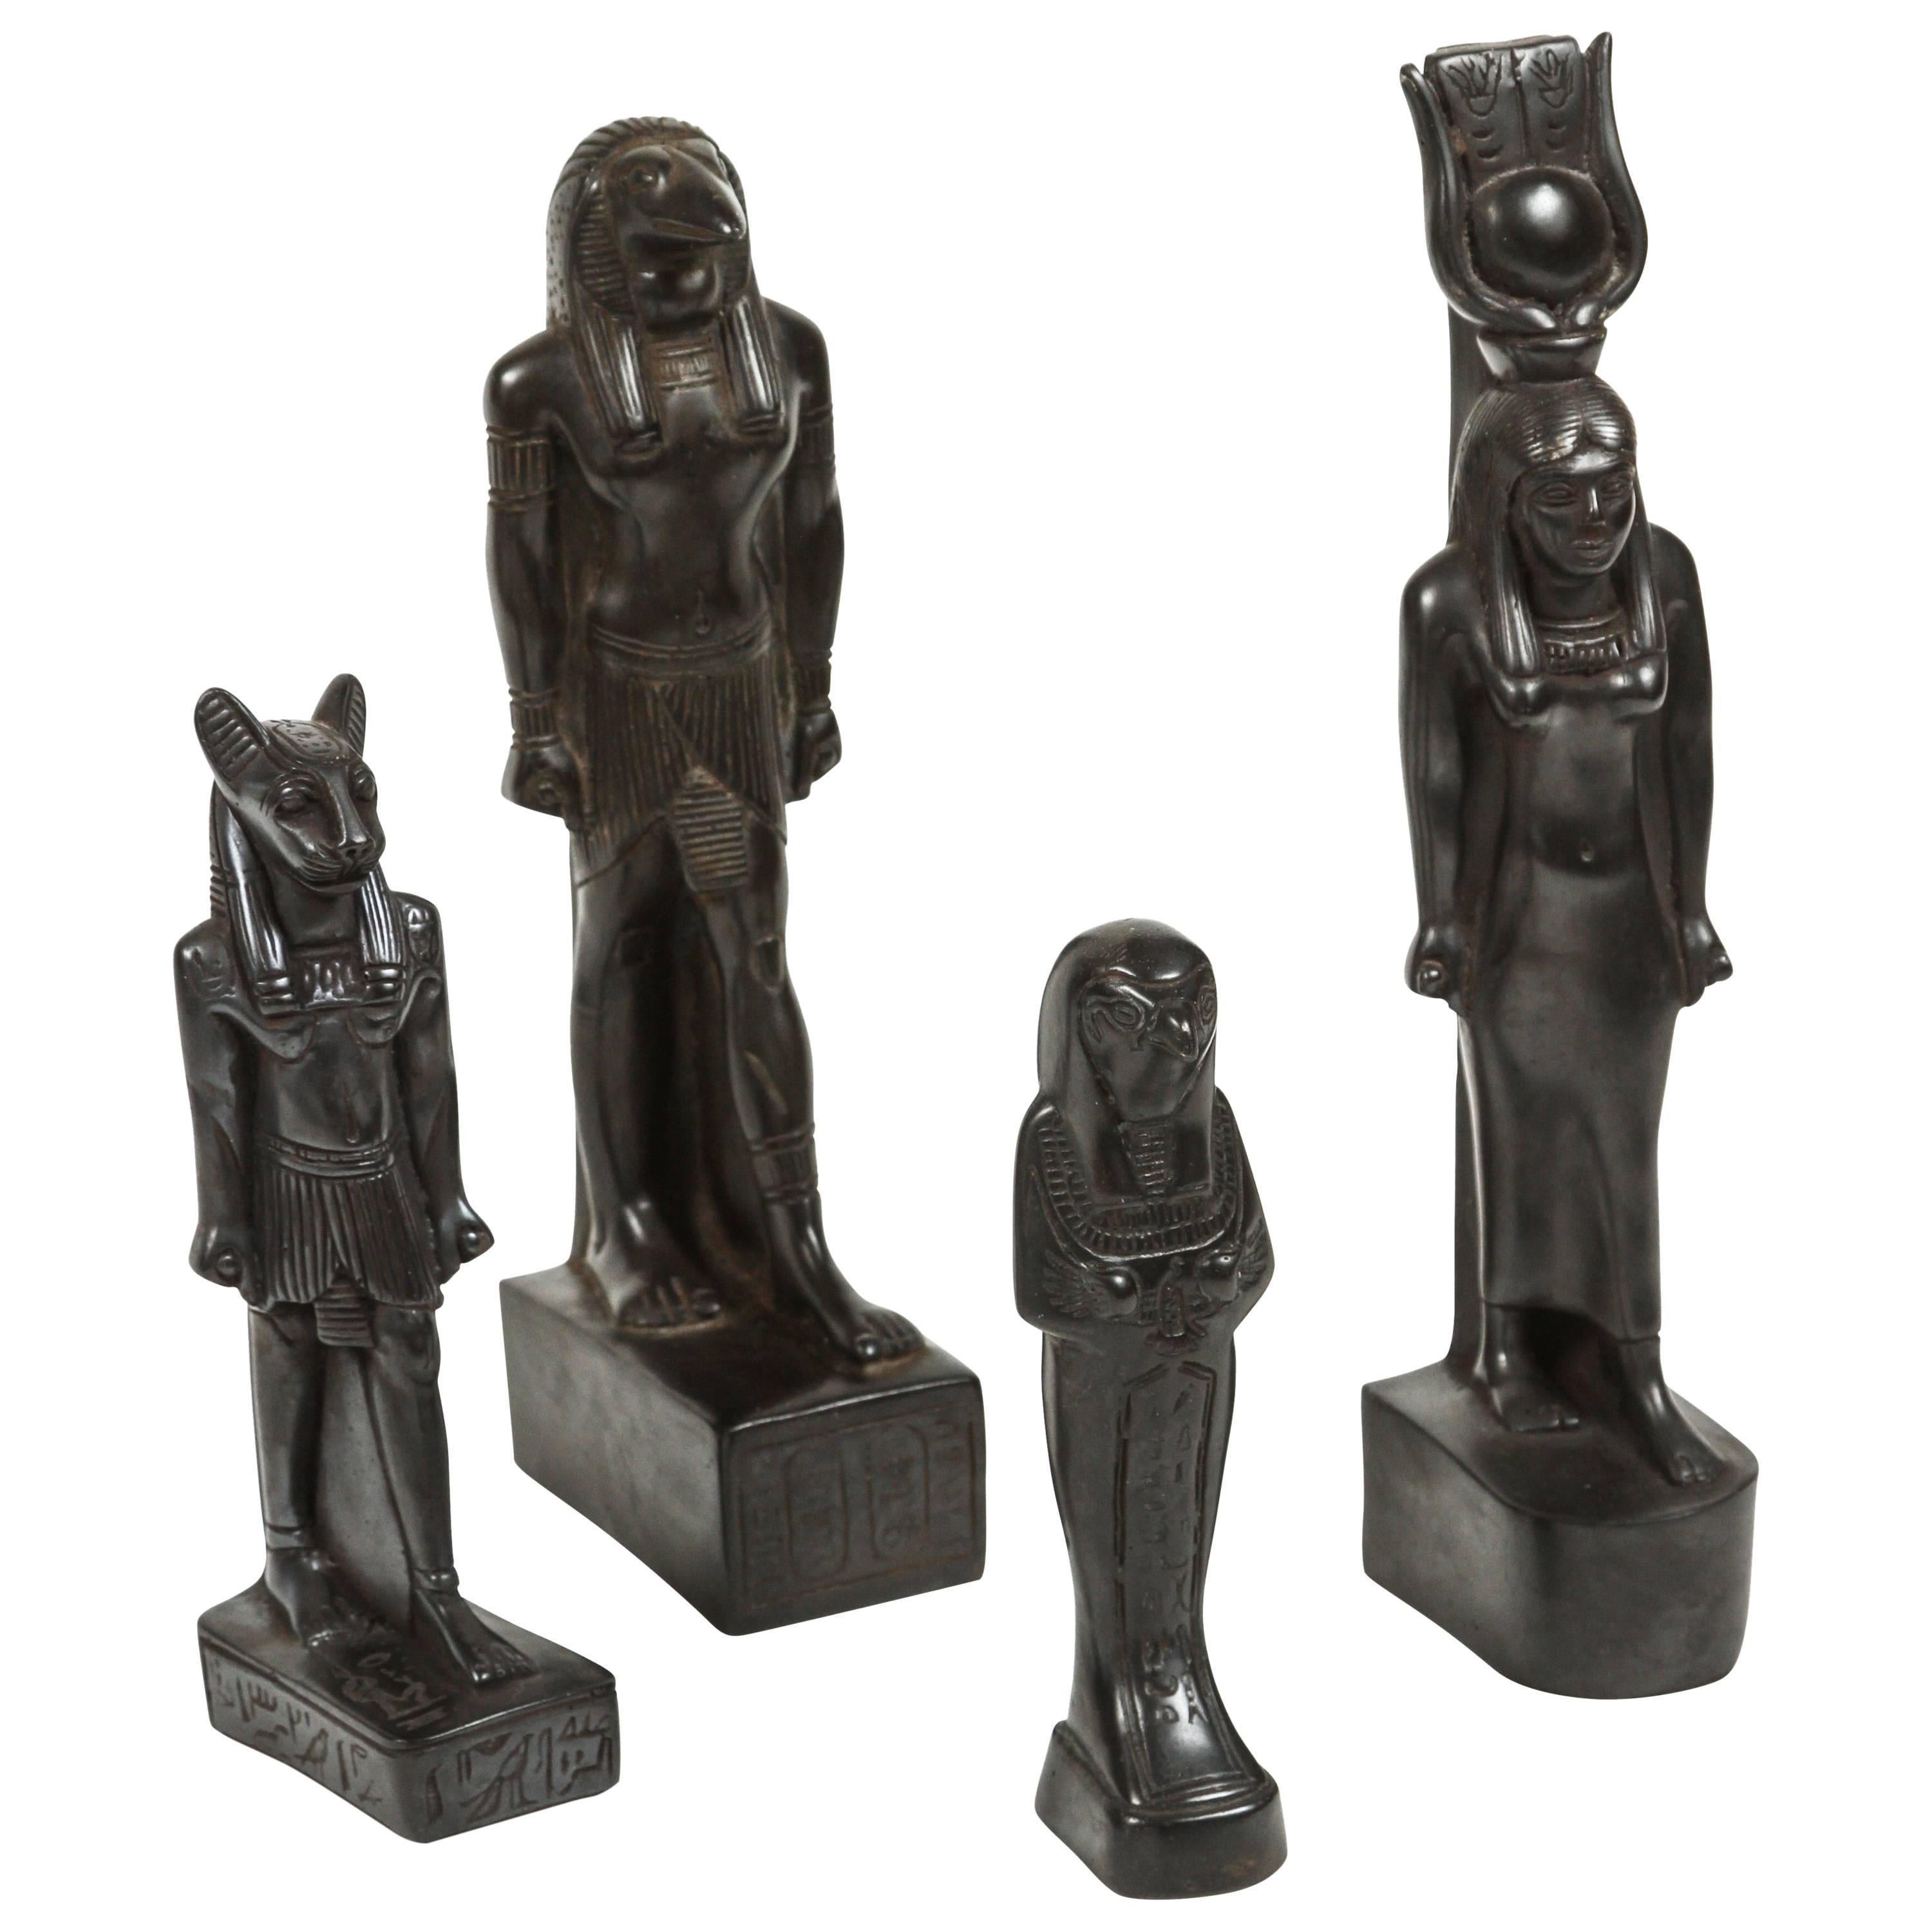 Collection of "Egyptian" Deities